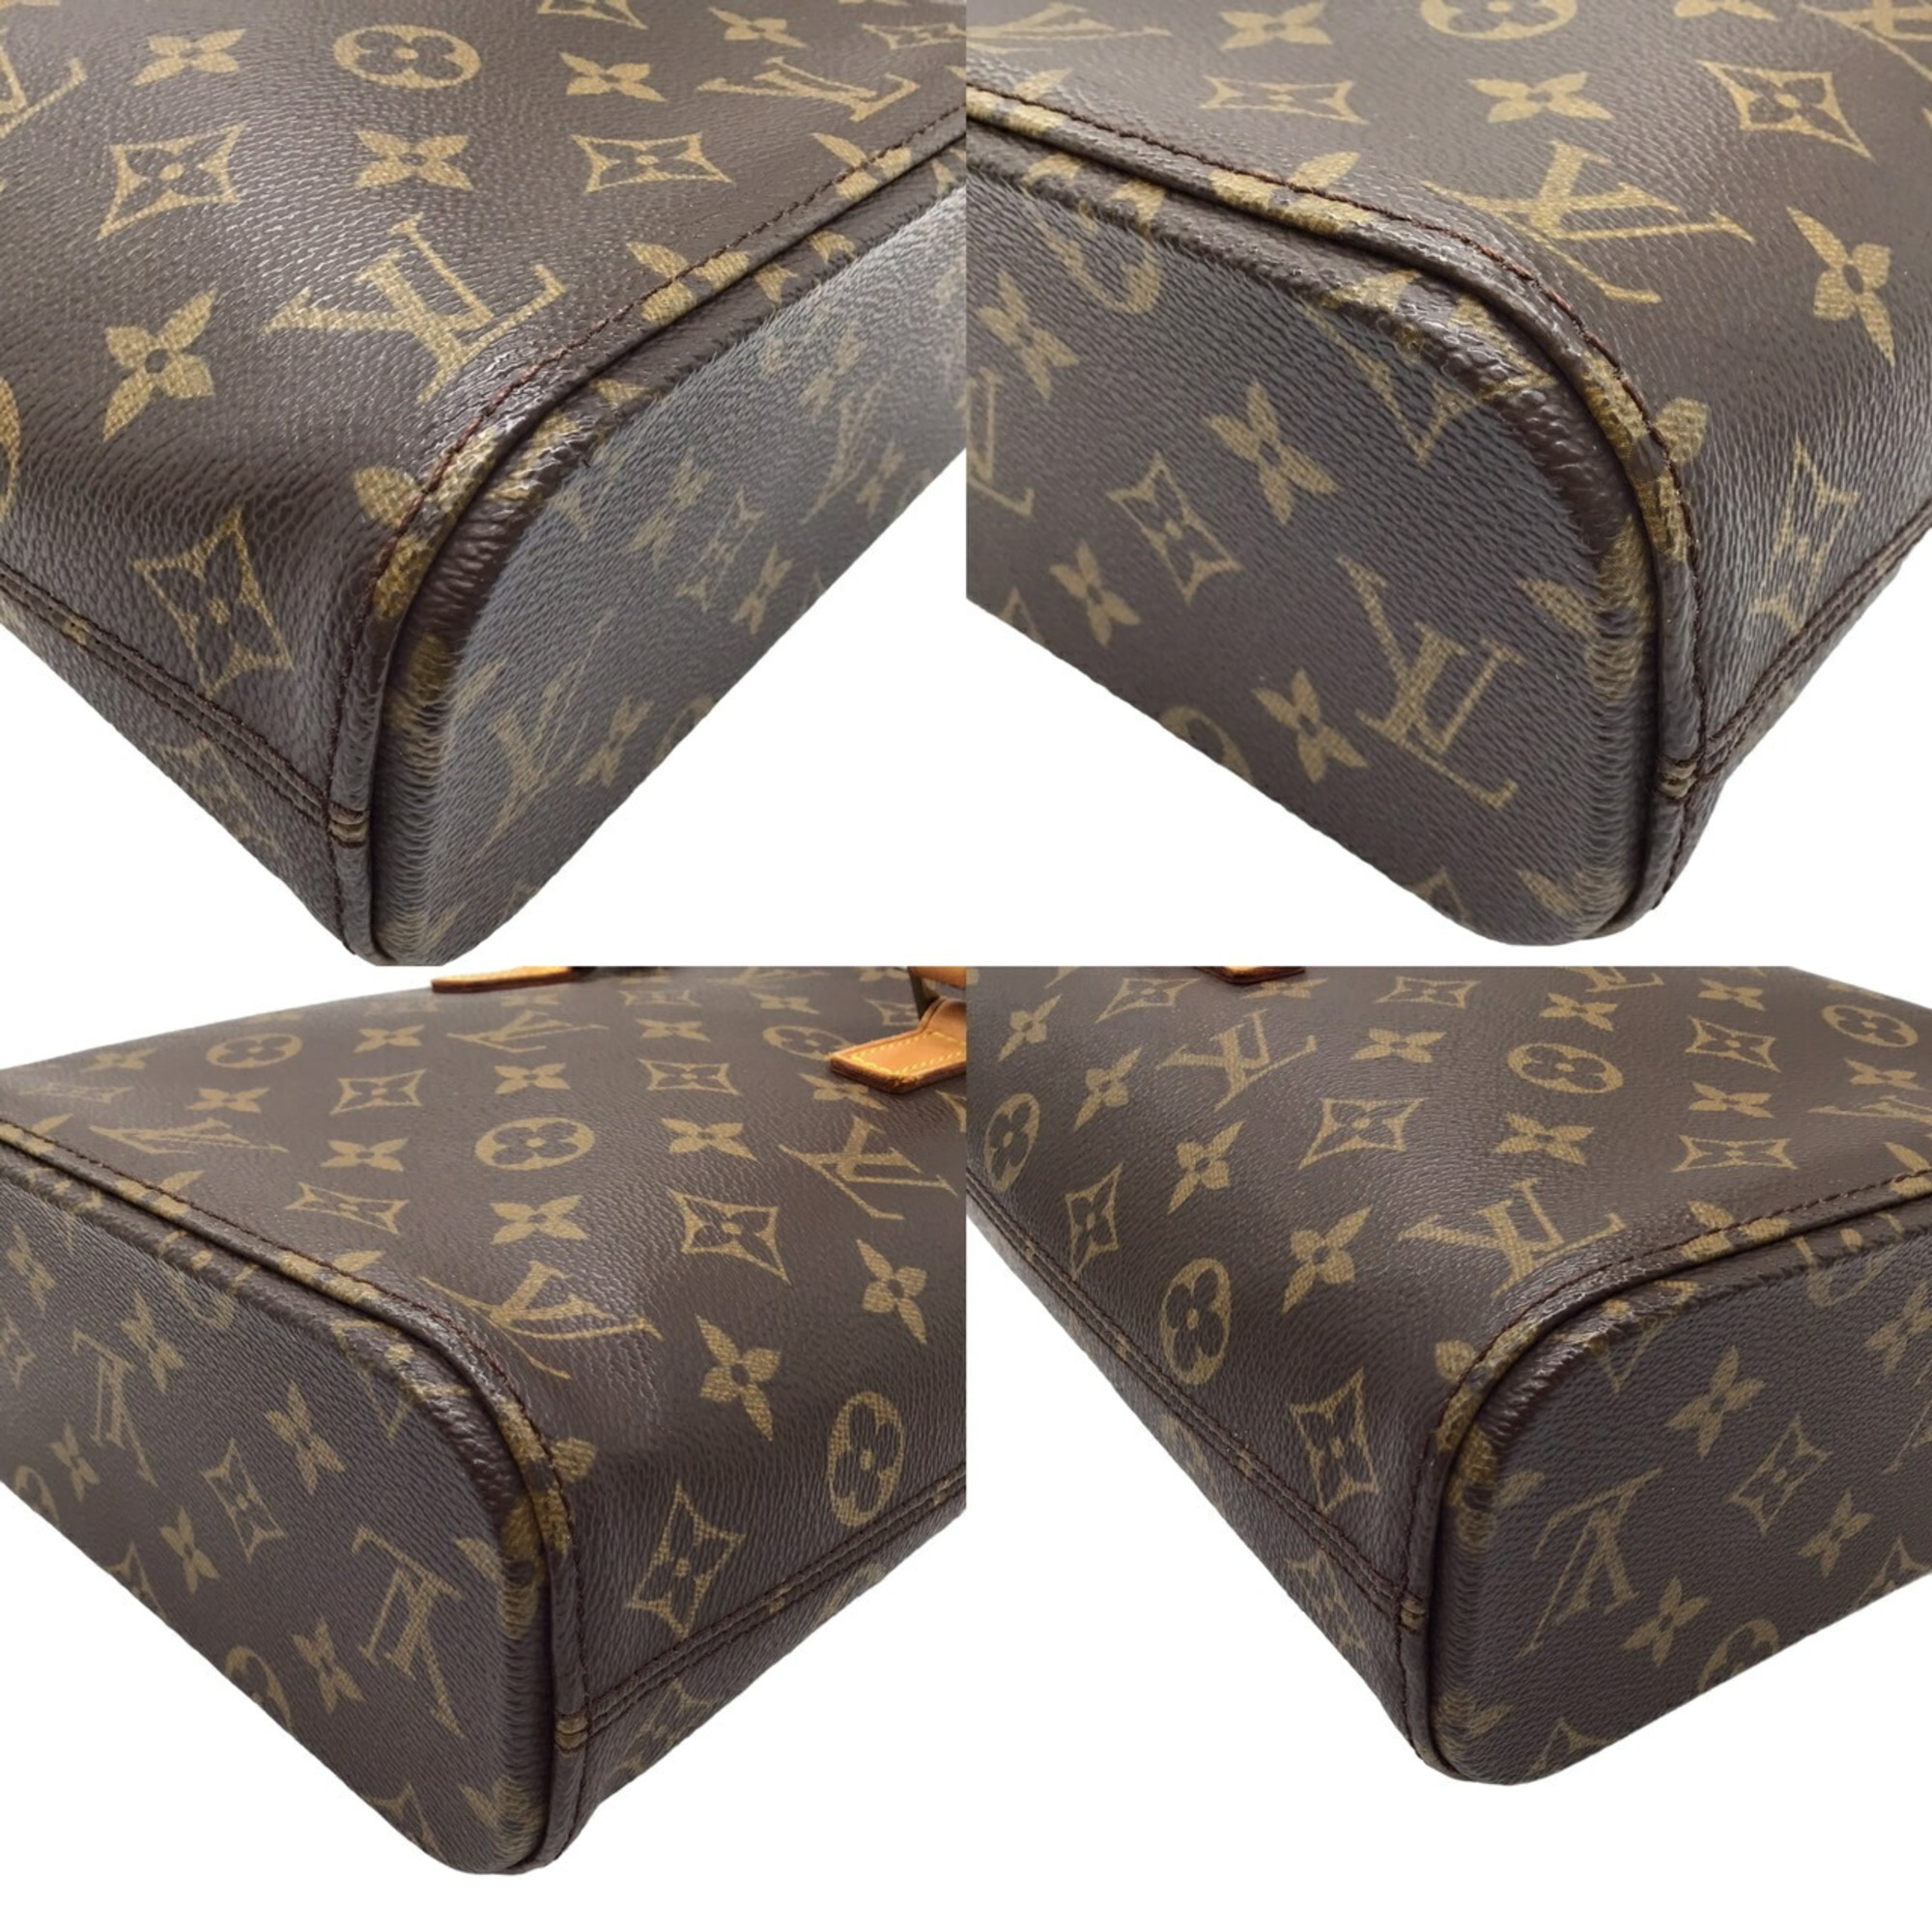 LOUIS VUITTON Monogram Vavin PM M51172 SR0023 Handbag Bag Square Compact Canvas Leather Brown Ladies Men's Unisex